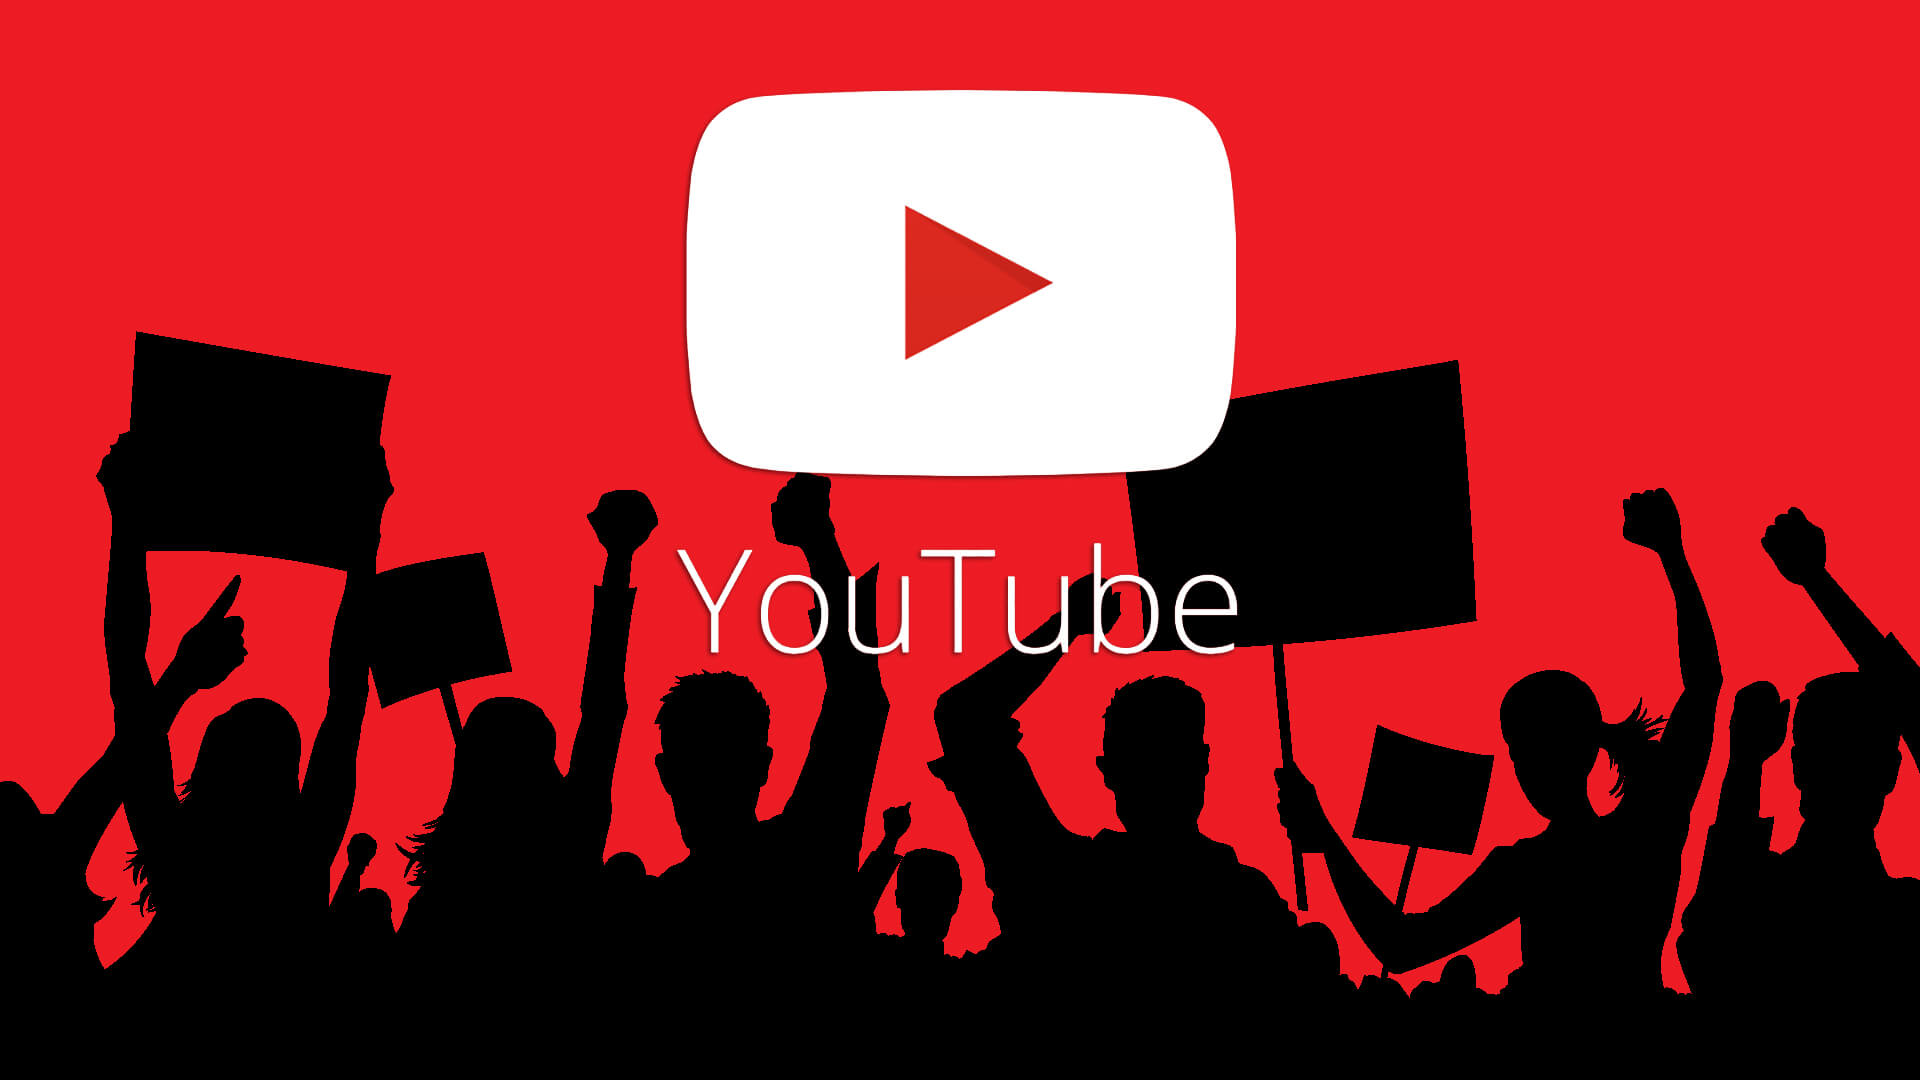 Resumo de como baixar e salvar vídeos e fontes de som do Youtube - 2022 versão mais recente image